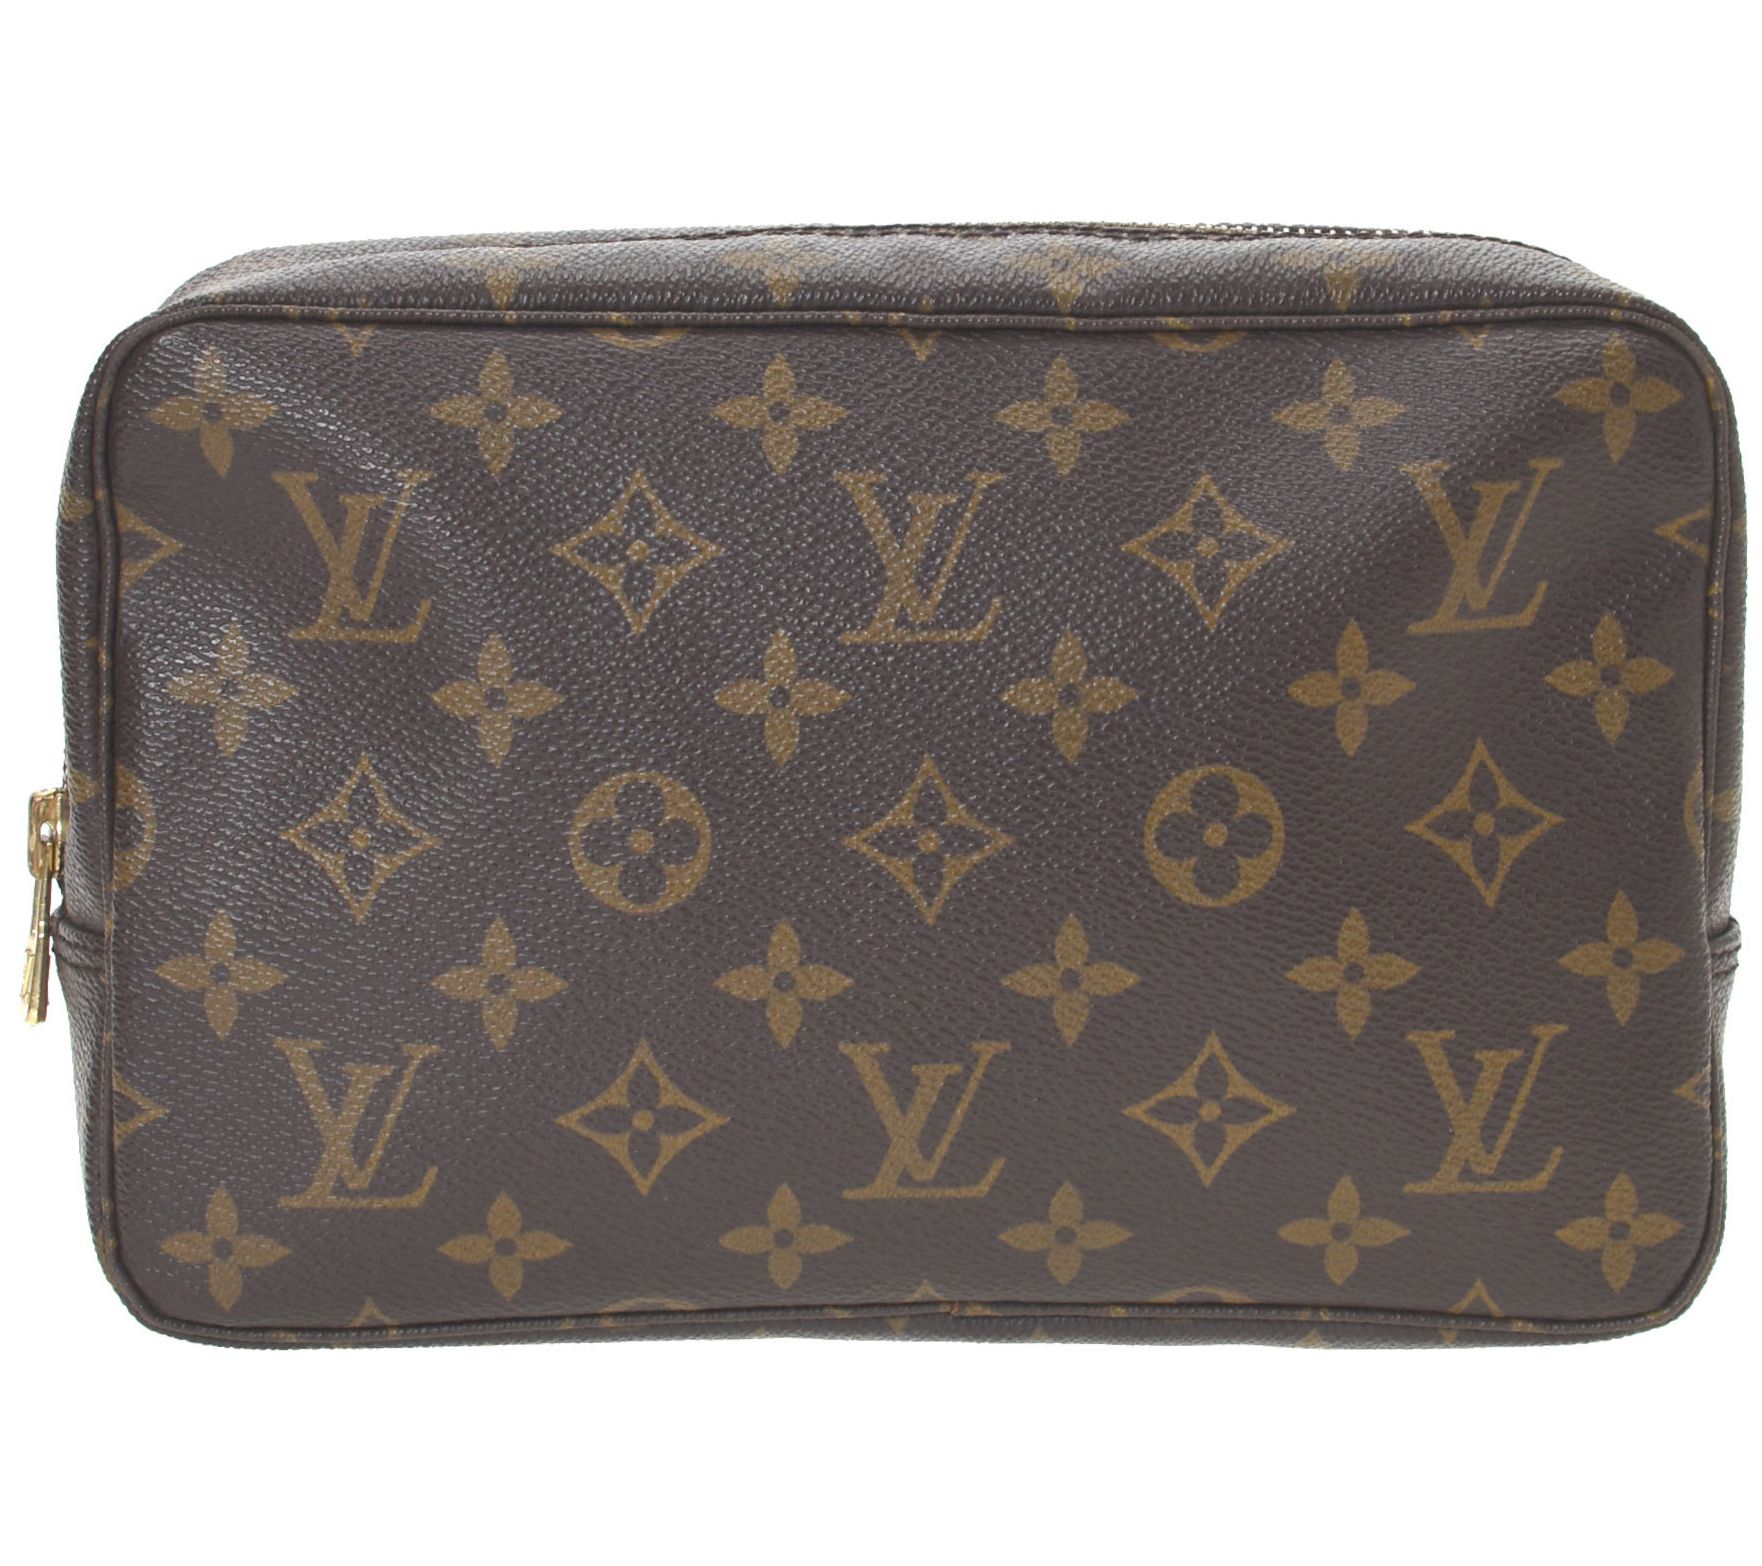 Pre-owned Louis Vuitton Trousse De Toilette Leather Vanity Case In